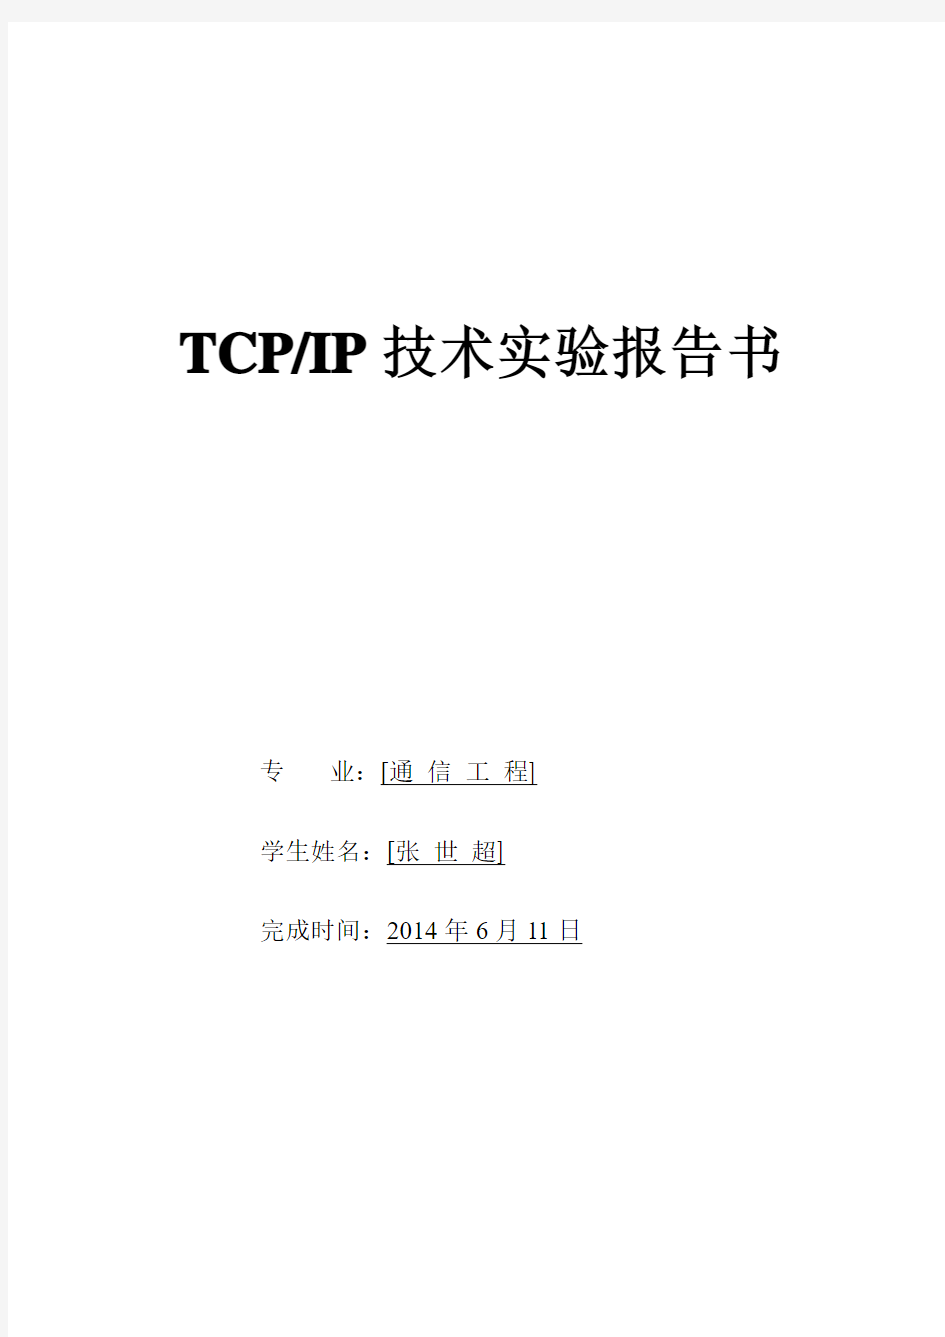 TCPIP实验报告